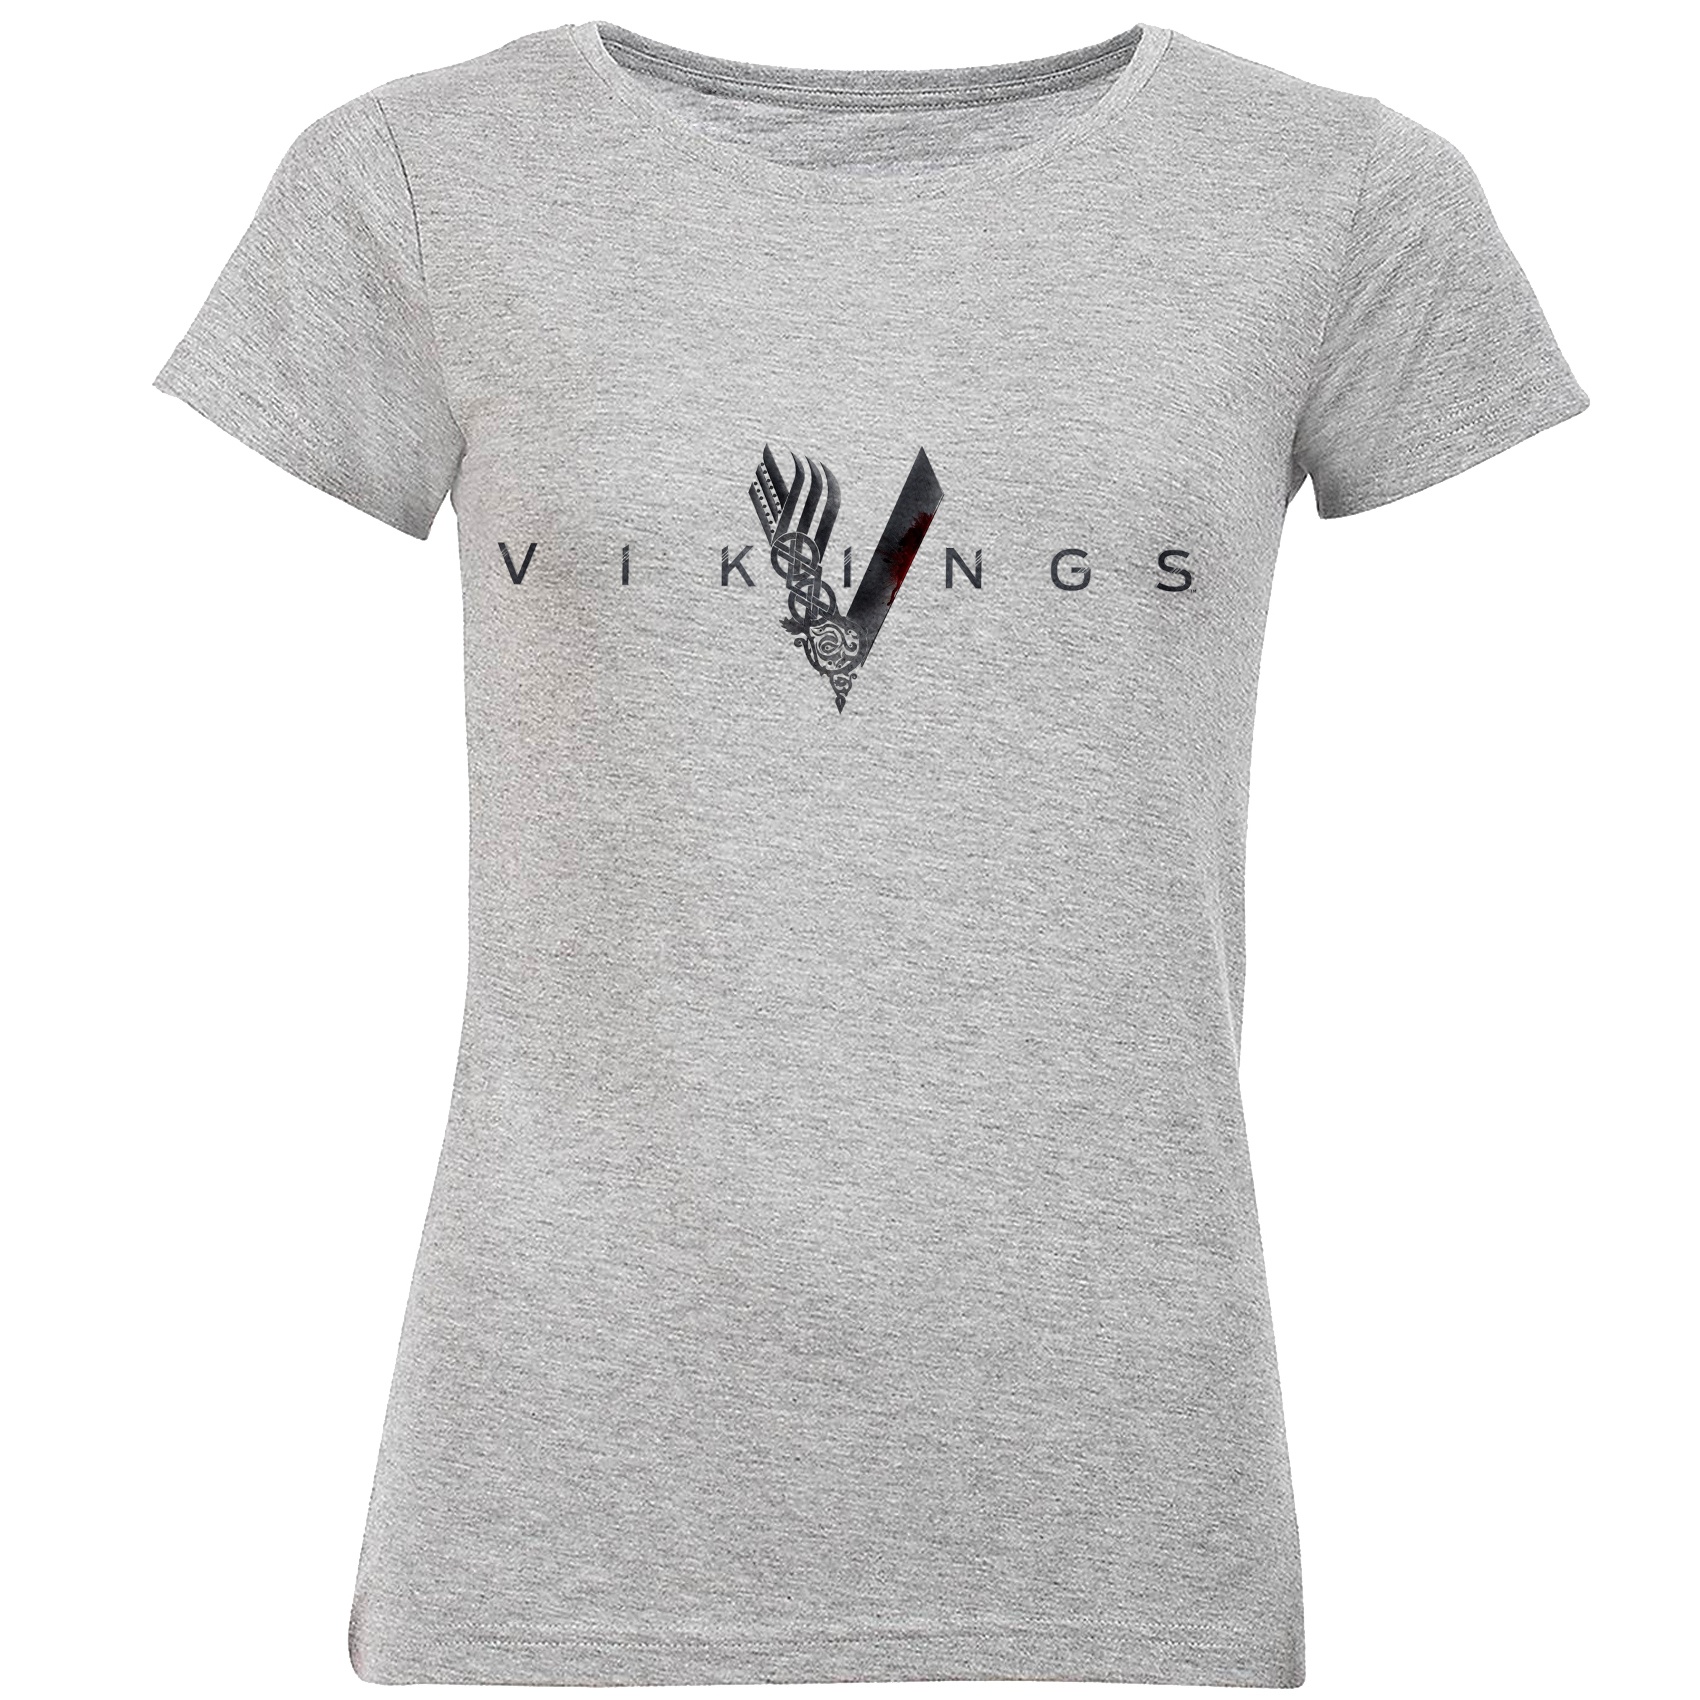 تی شرت آستین کوتاه زنانه طرح Vikings مدل S354